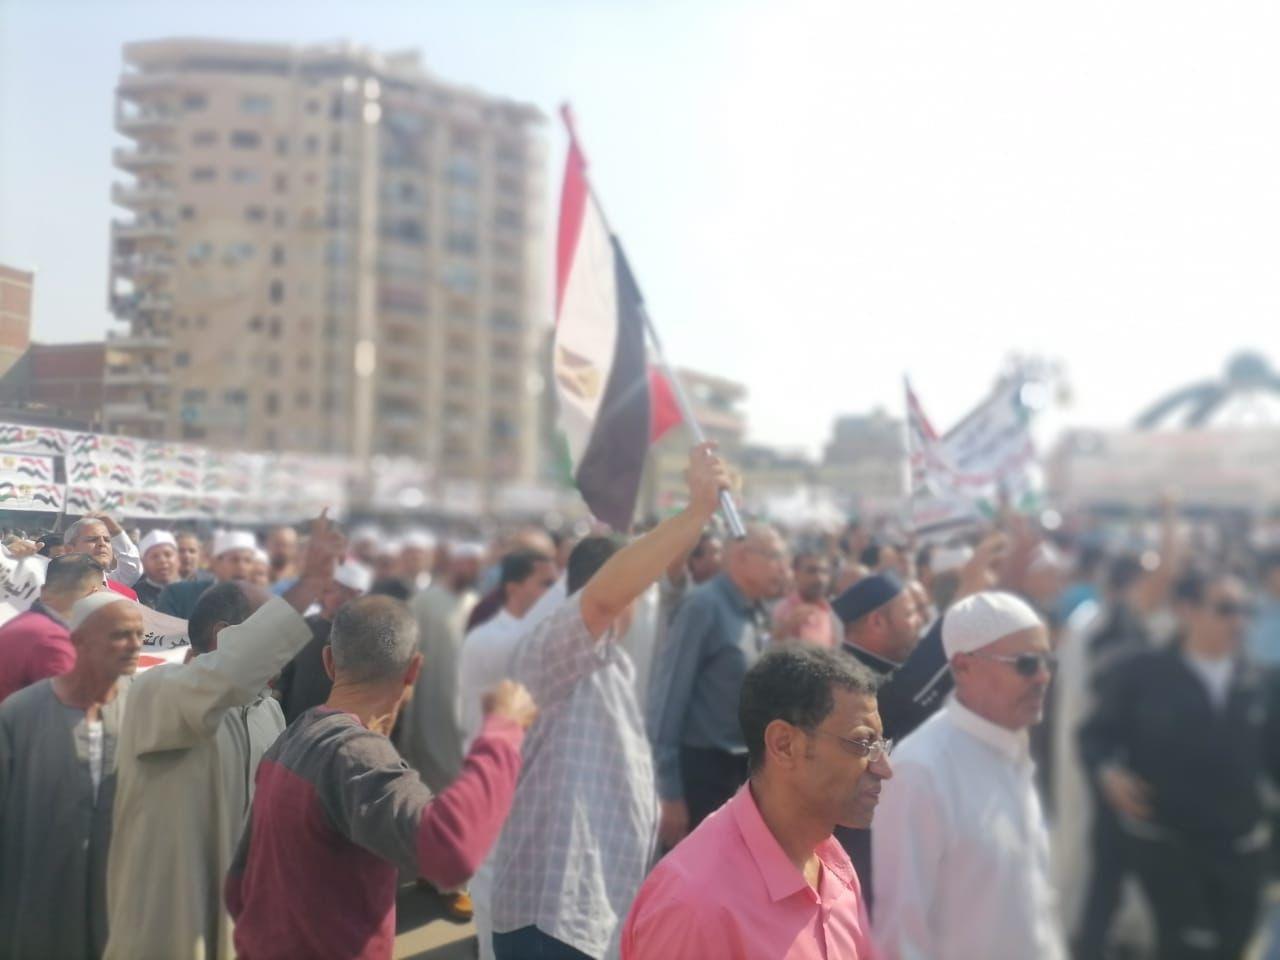 المصريين الأحرار بالبحيرة يشارك بالالاف تفويض الرئيس السيسي للحافظ علي أمن مصر القومي